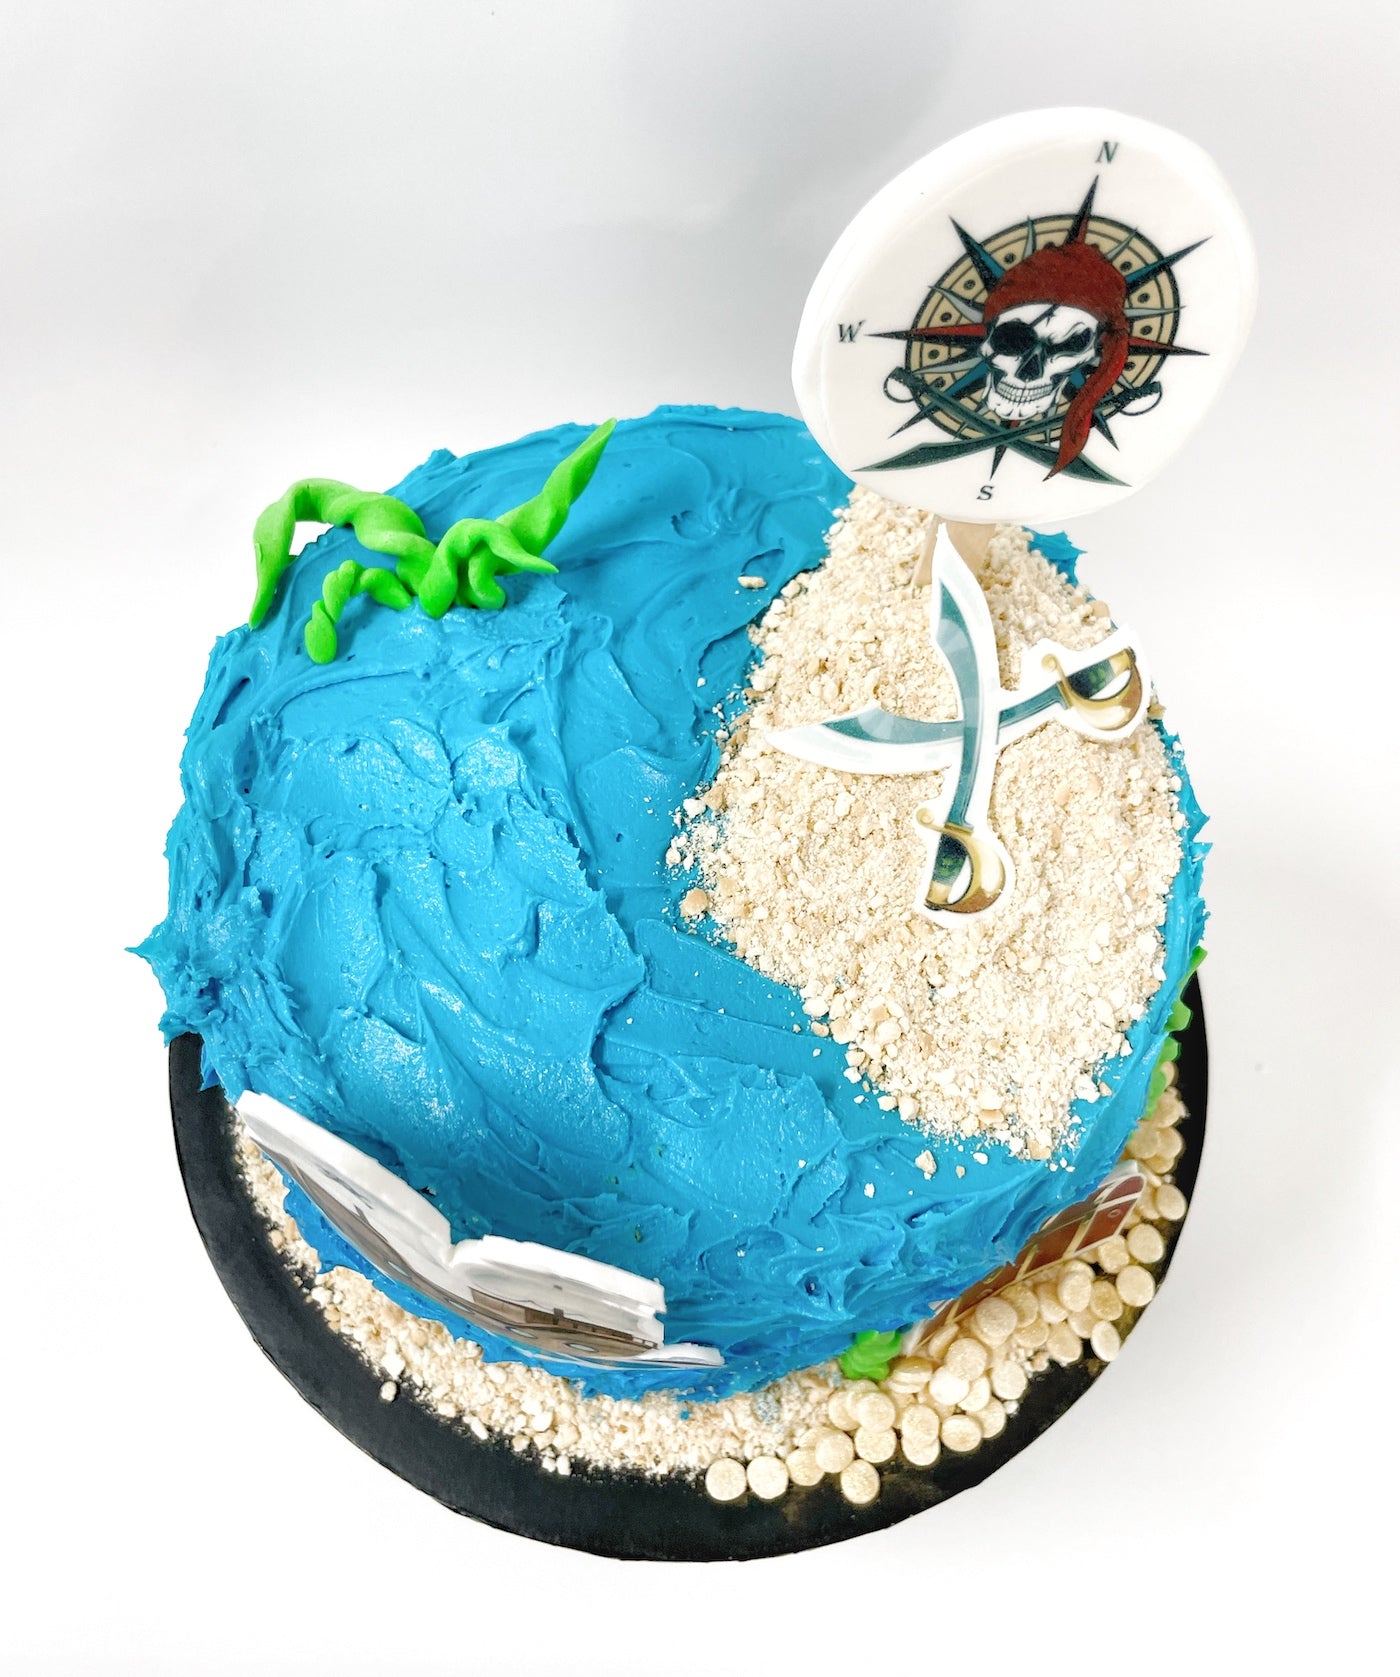 DIY Pirate Cake Kit, Ahoy Cake Kit, Pirate Ship, Treasure, Pirate Party, Boys Birthday Cake